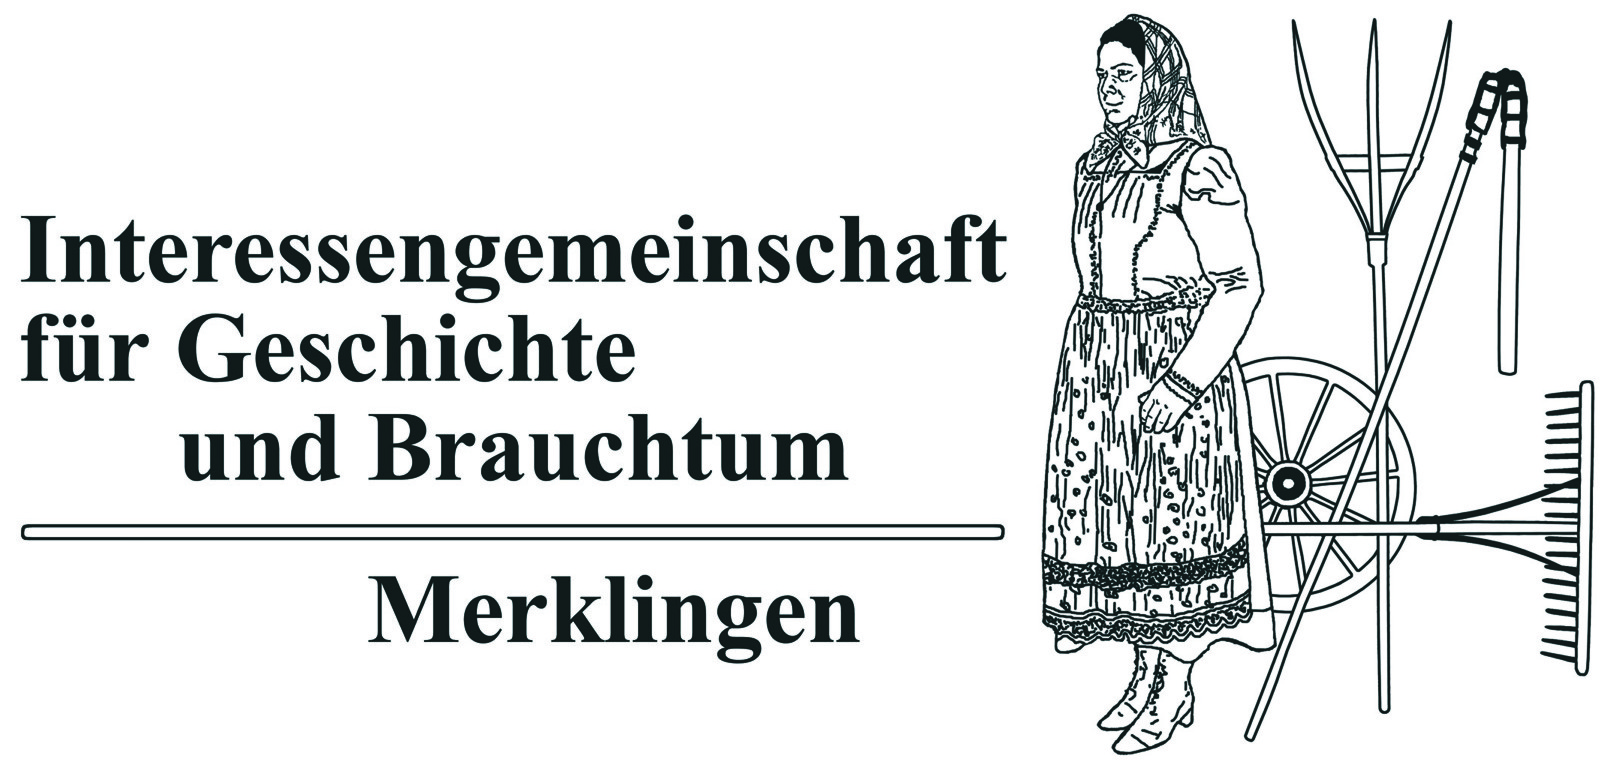 www.ig-merklingen.de